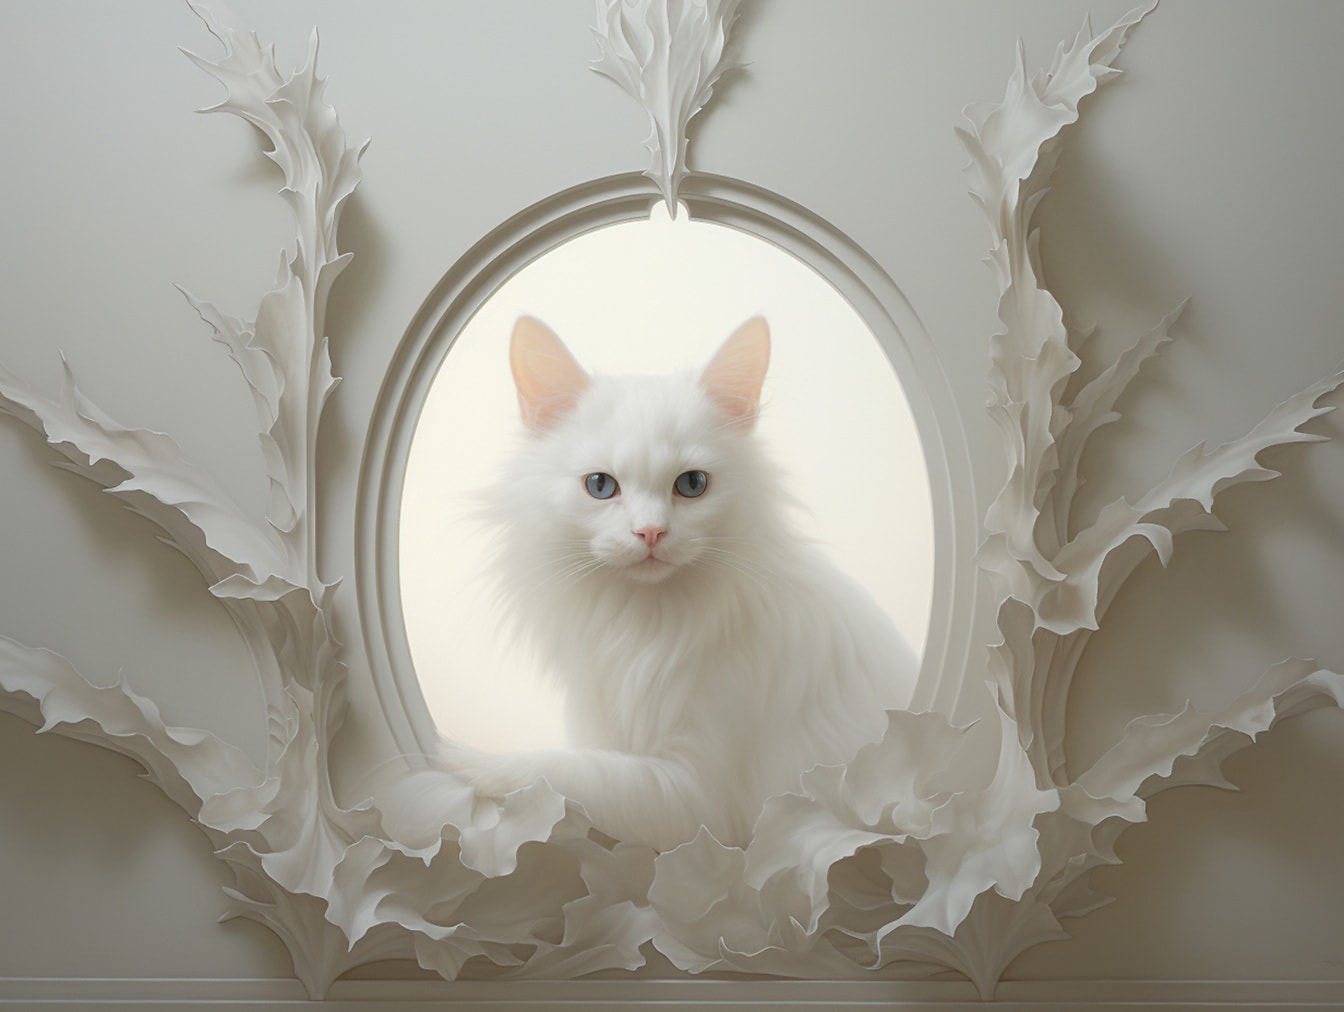 Retrato do gato doméstico peludo branco bonito com olhos azuis